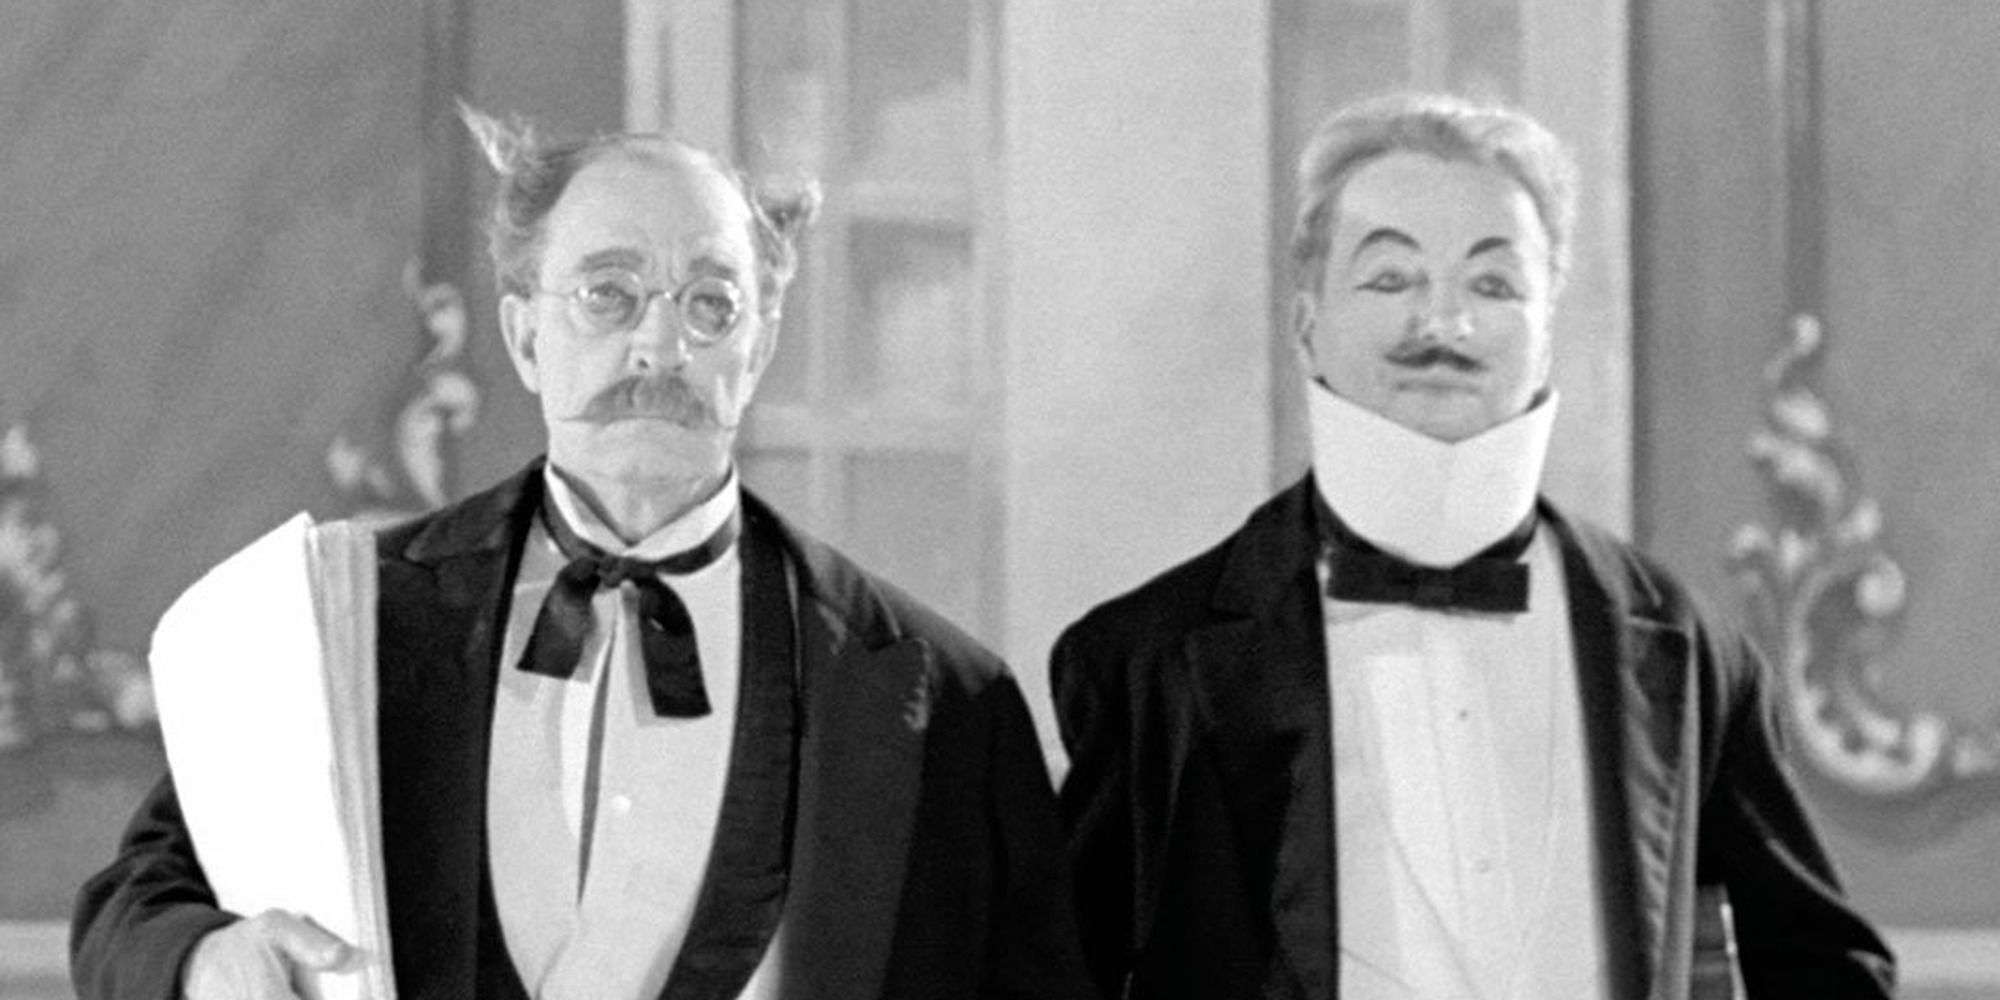 Charles Chaplin et Buster Keaton en personnage se tenant côte à côte.